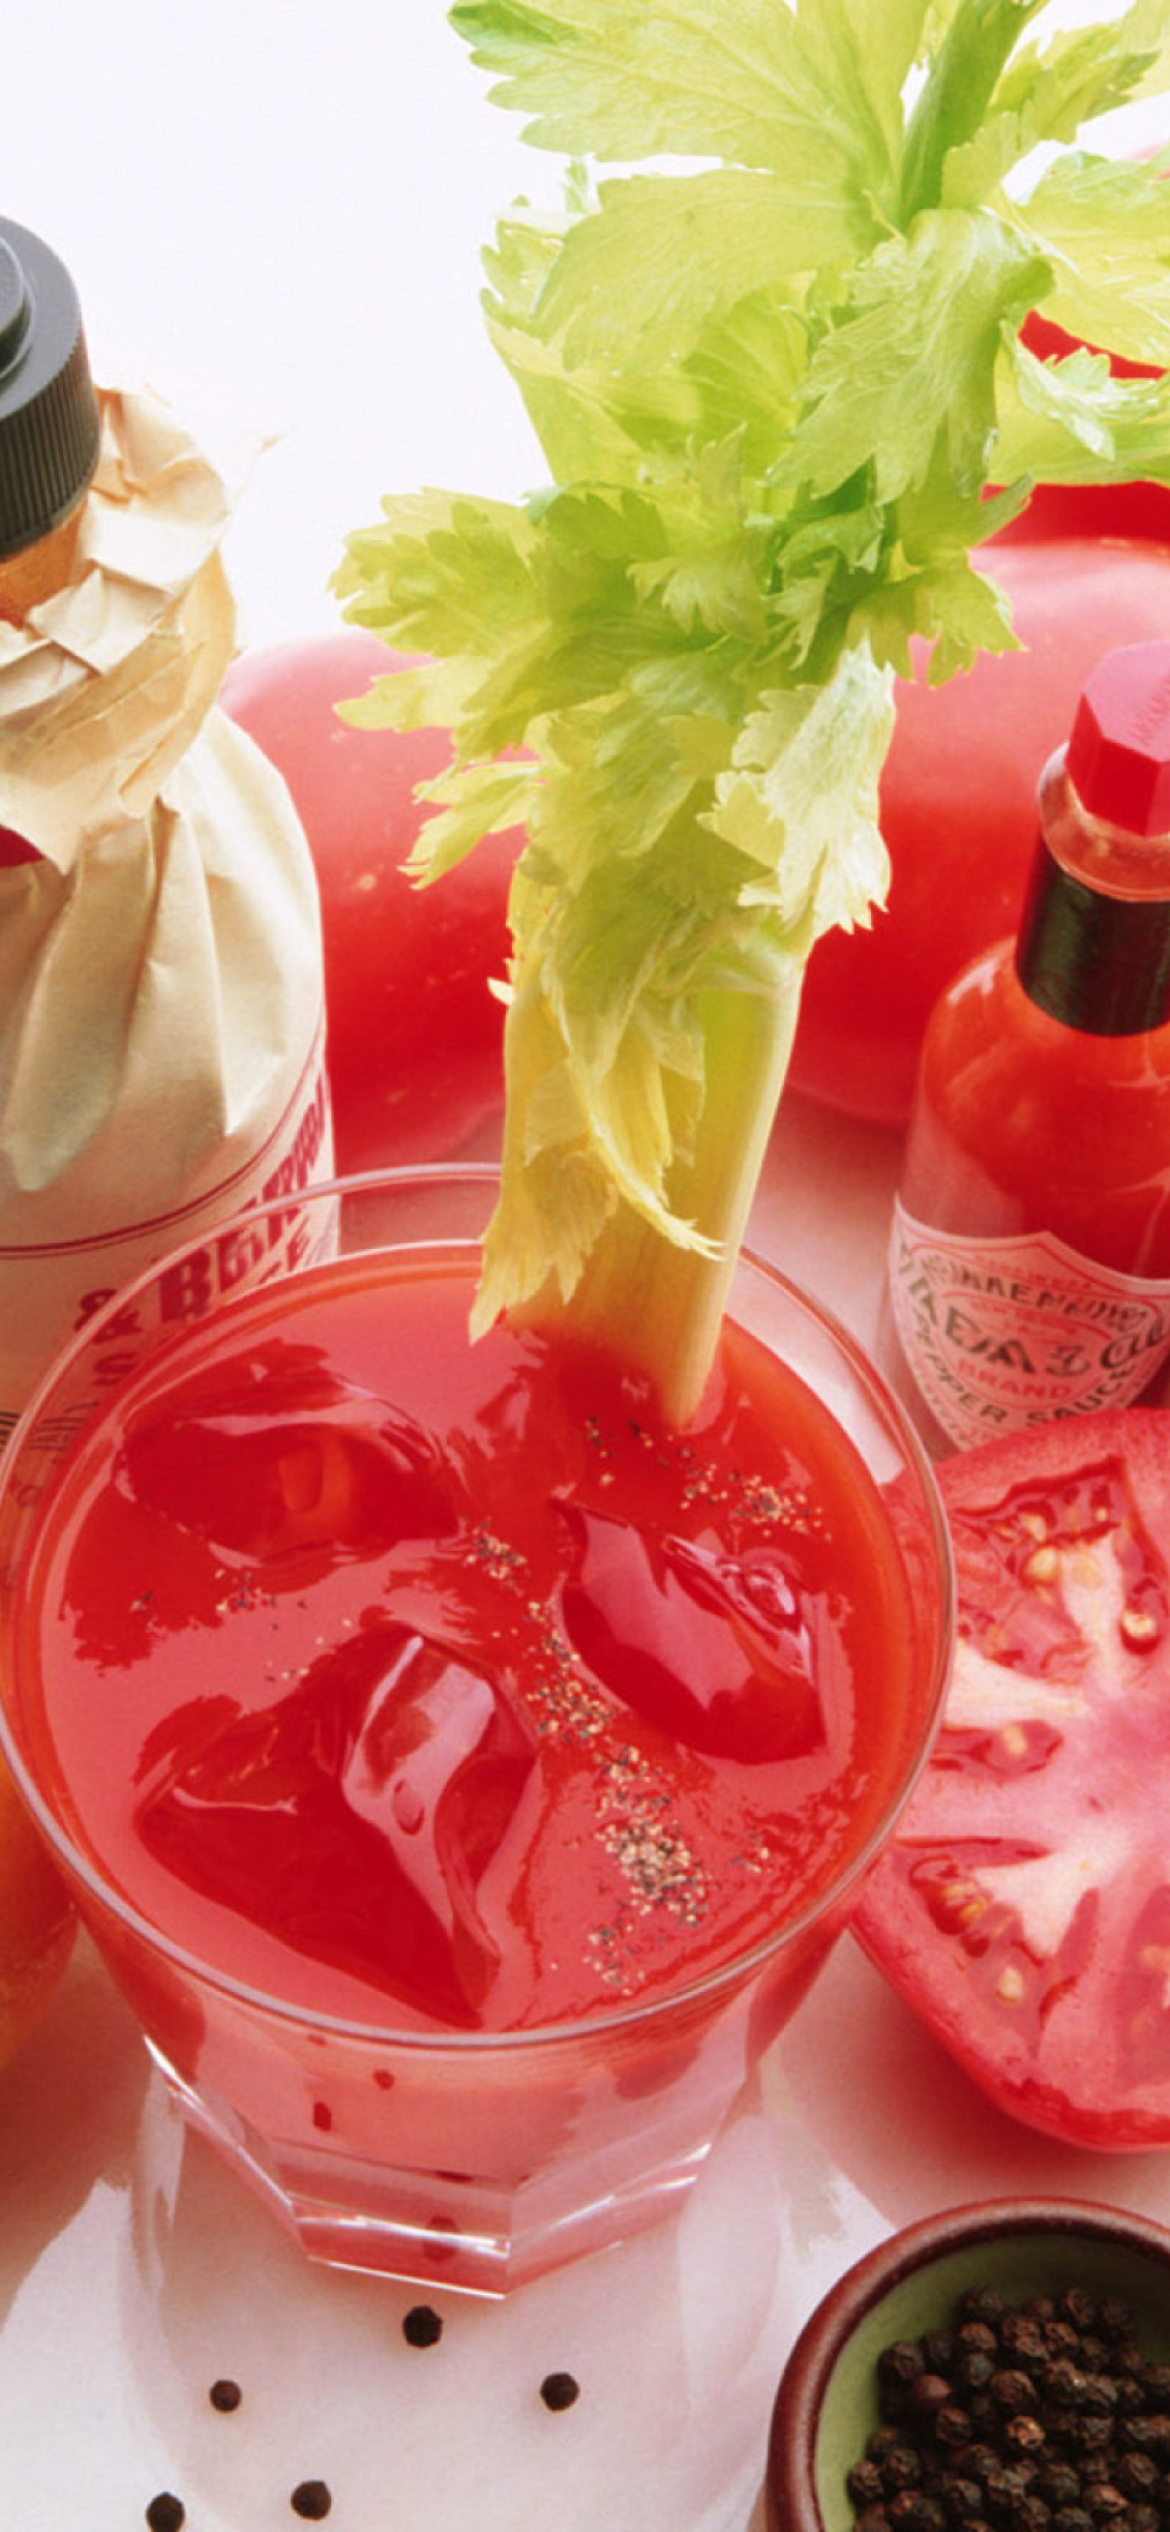 Sfondi Spicy Tomato Sauce - Tabasco 1170x2532